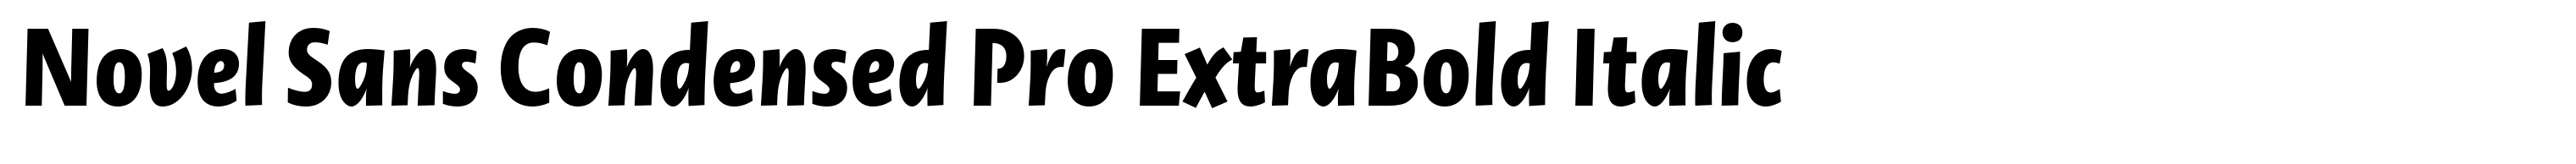 Novel Sans Condensed Pro ExtraBold Italic